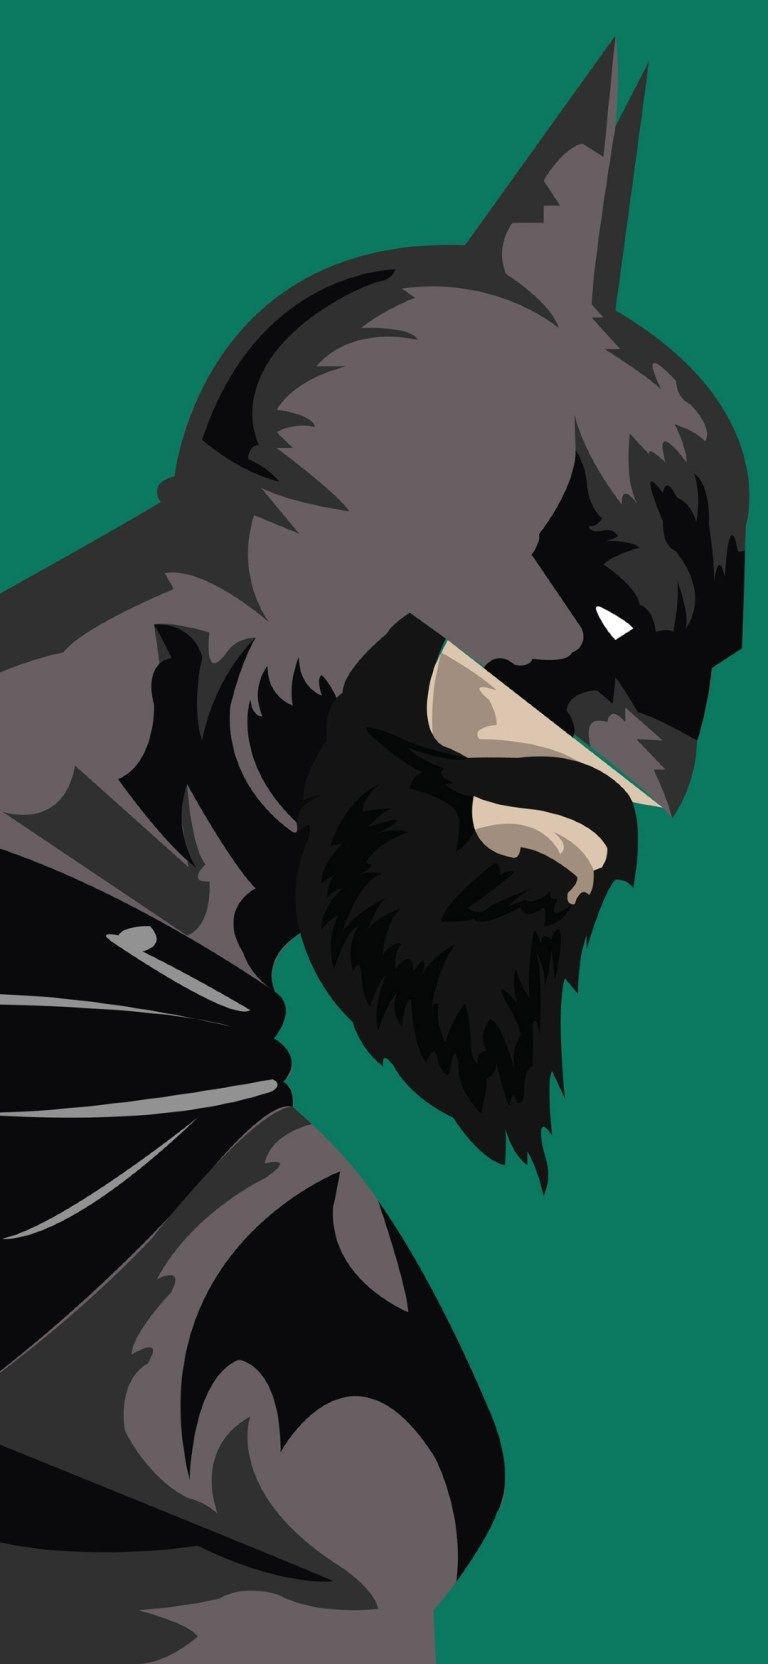 Batman Beard Superhero Funny iPhone 4K Wallpaper Download